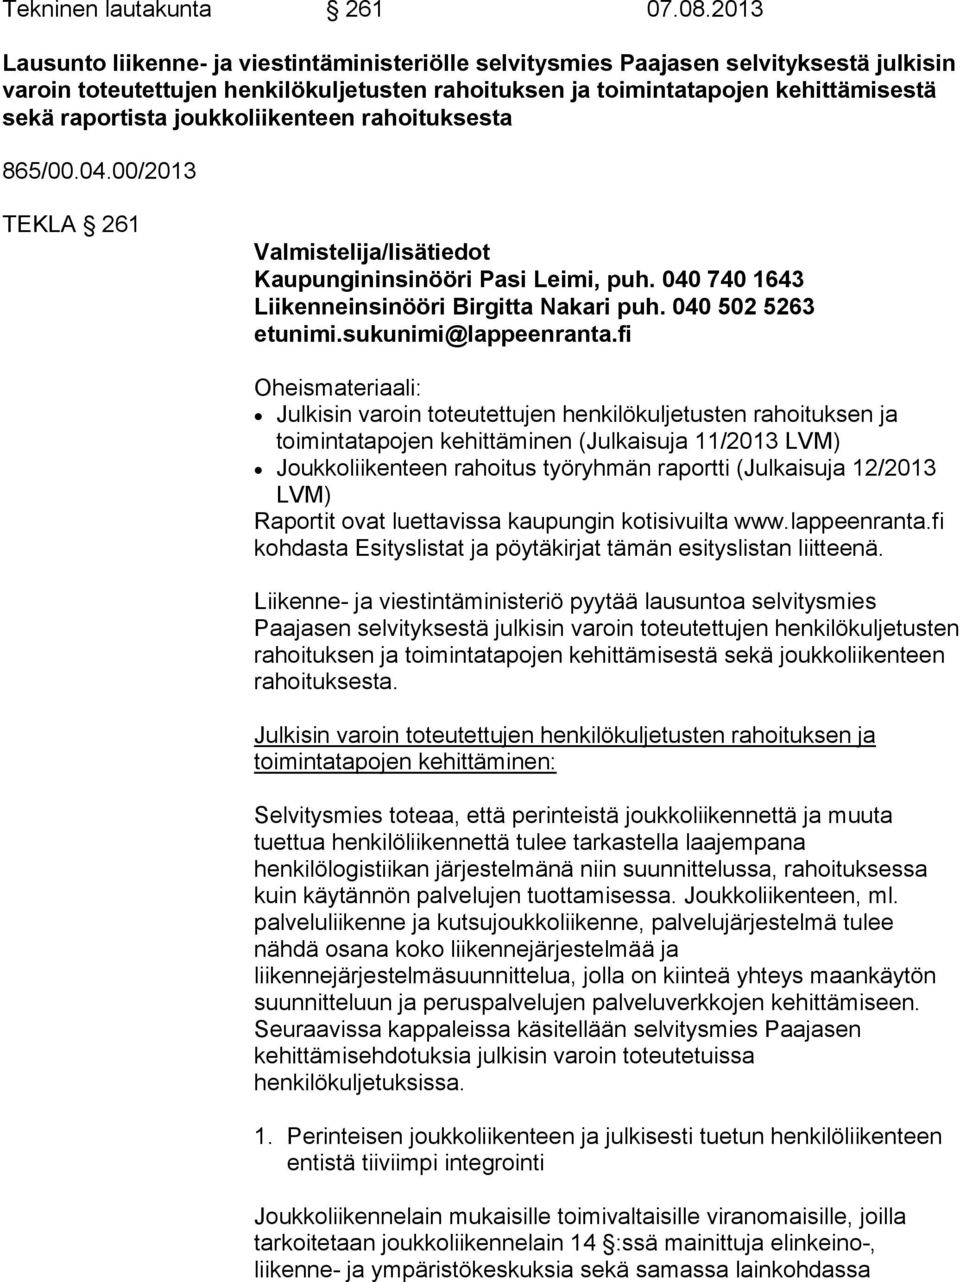 joukkoliikenteen rahoituksesta 865/00.04.00/2013 TEKLA 261 Valmistelija/lisätiedot Kaupungininsinööri Pasi Leimi, puh. 040 740 1643 Liikenneinsinööri Birgitta Nakari puh. 040 502 5263 etunimi.